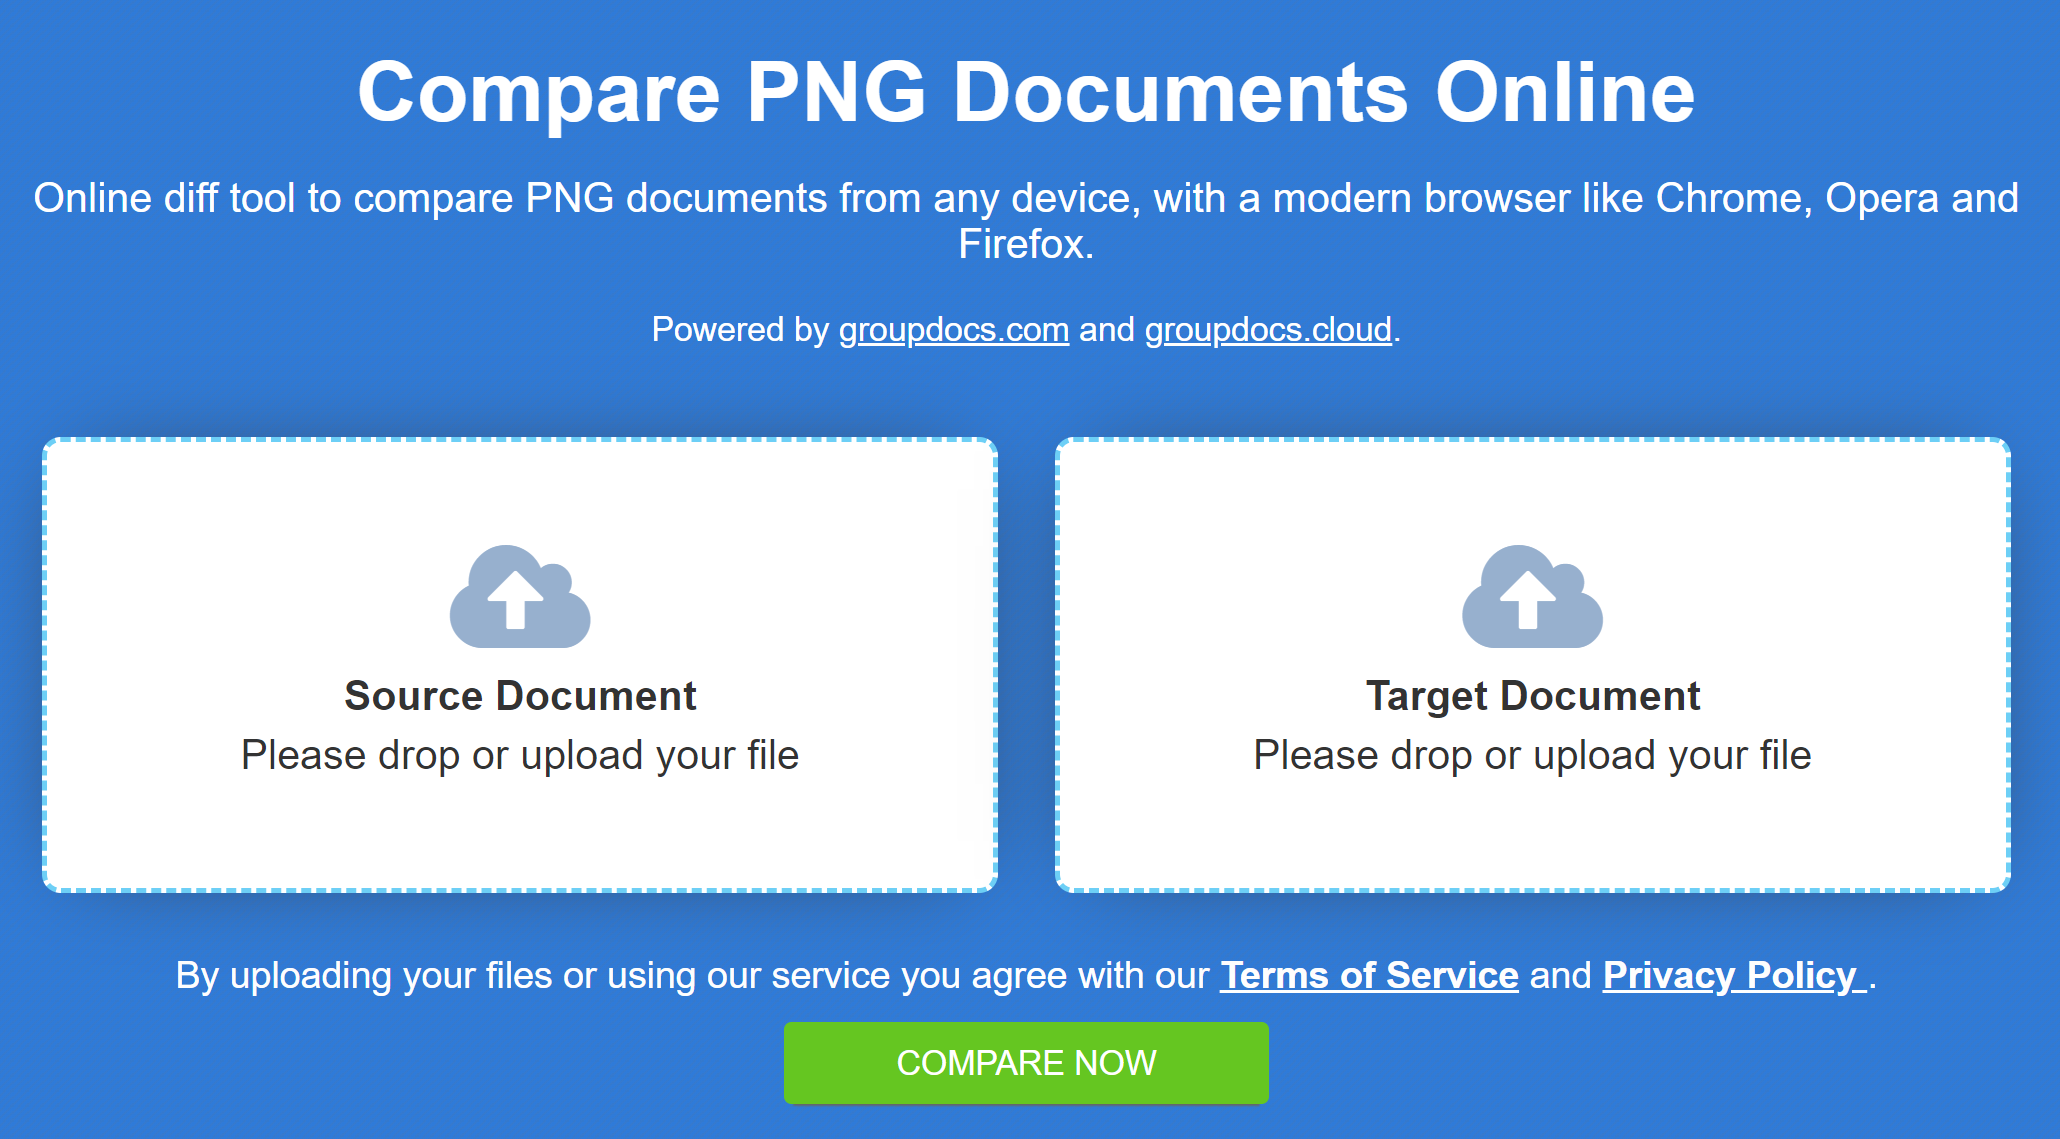 เครื่องมือเปรียบเทียบออนไลน์เพื่อเปรียบเทียบภาพ PNG